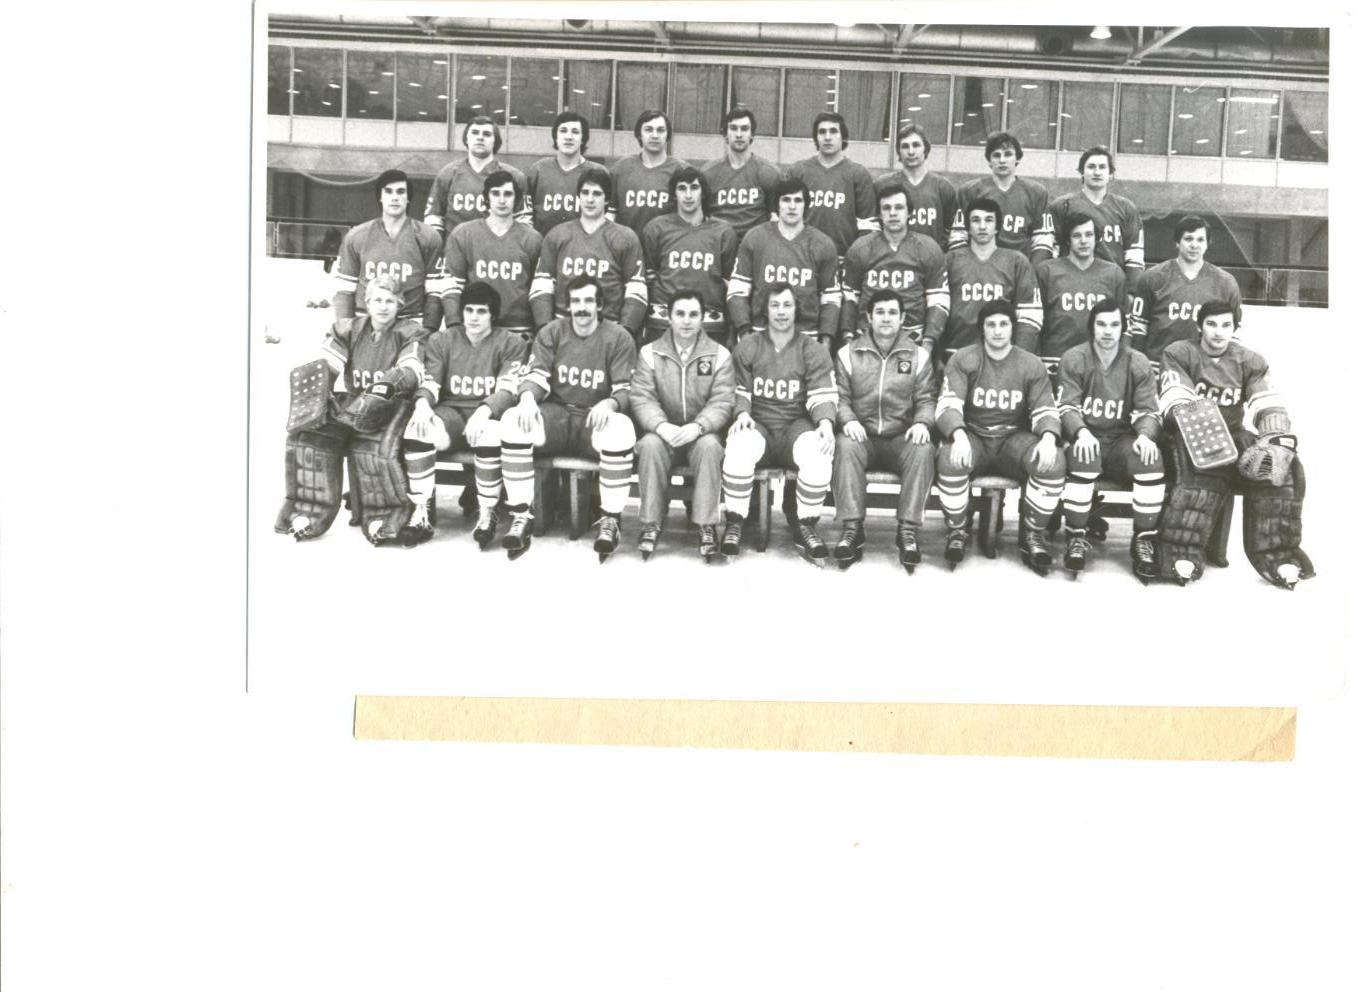 Сборная СССР по хоккею с шайбой перед Чемпионатом мира 1982 г. Фотохроника ТАСС.